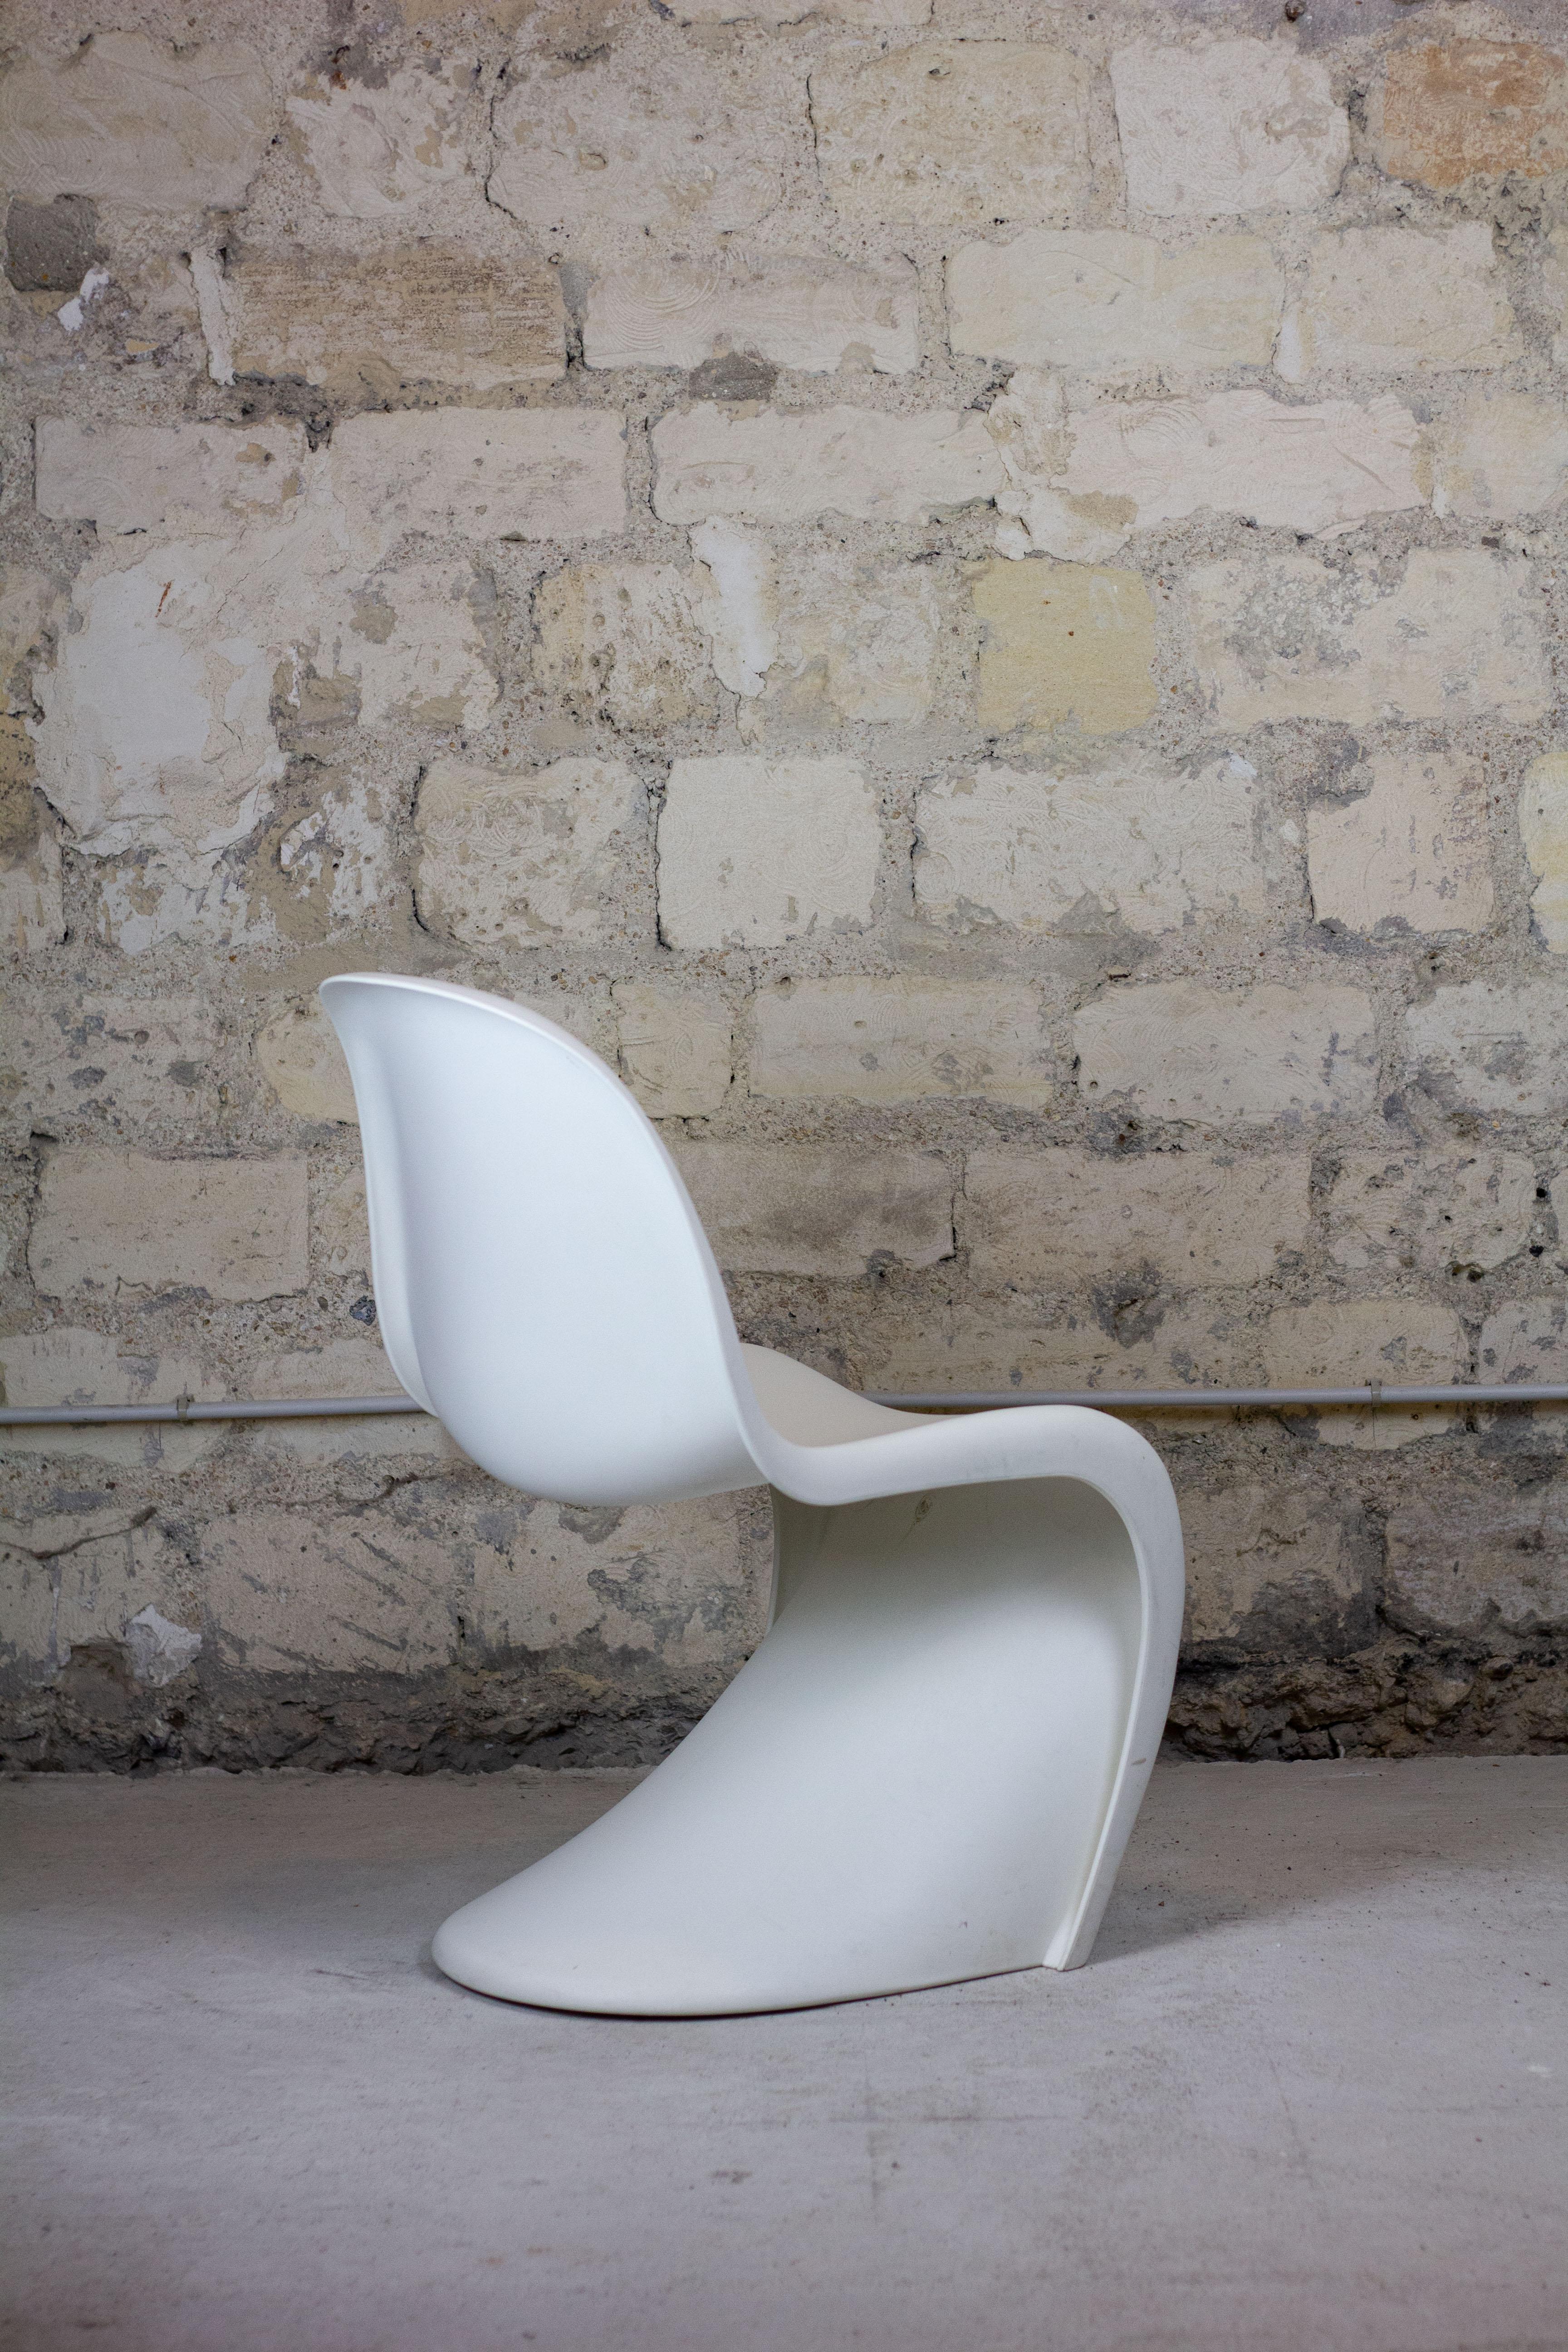 Lot de 8 chaises blanches par Verner Panton, édition Vitra. Le classique du design des années 1960 de Verner Panton, fabriqué par Vitra, est doté d'une structure d'aspect futuriste. La chaise 